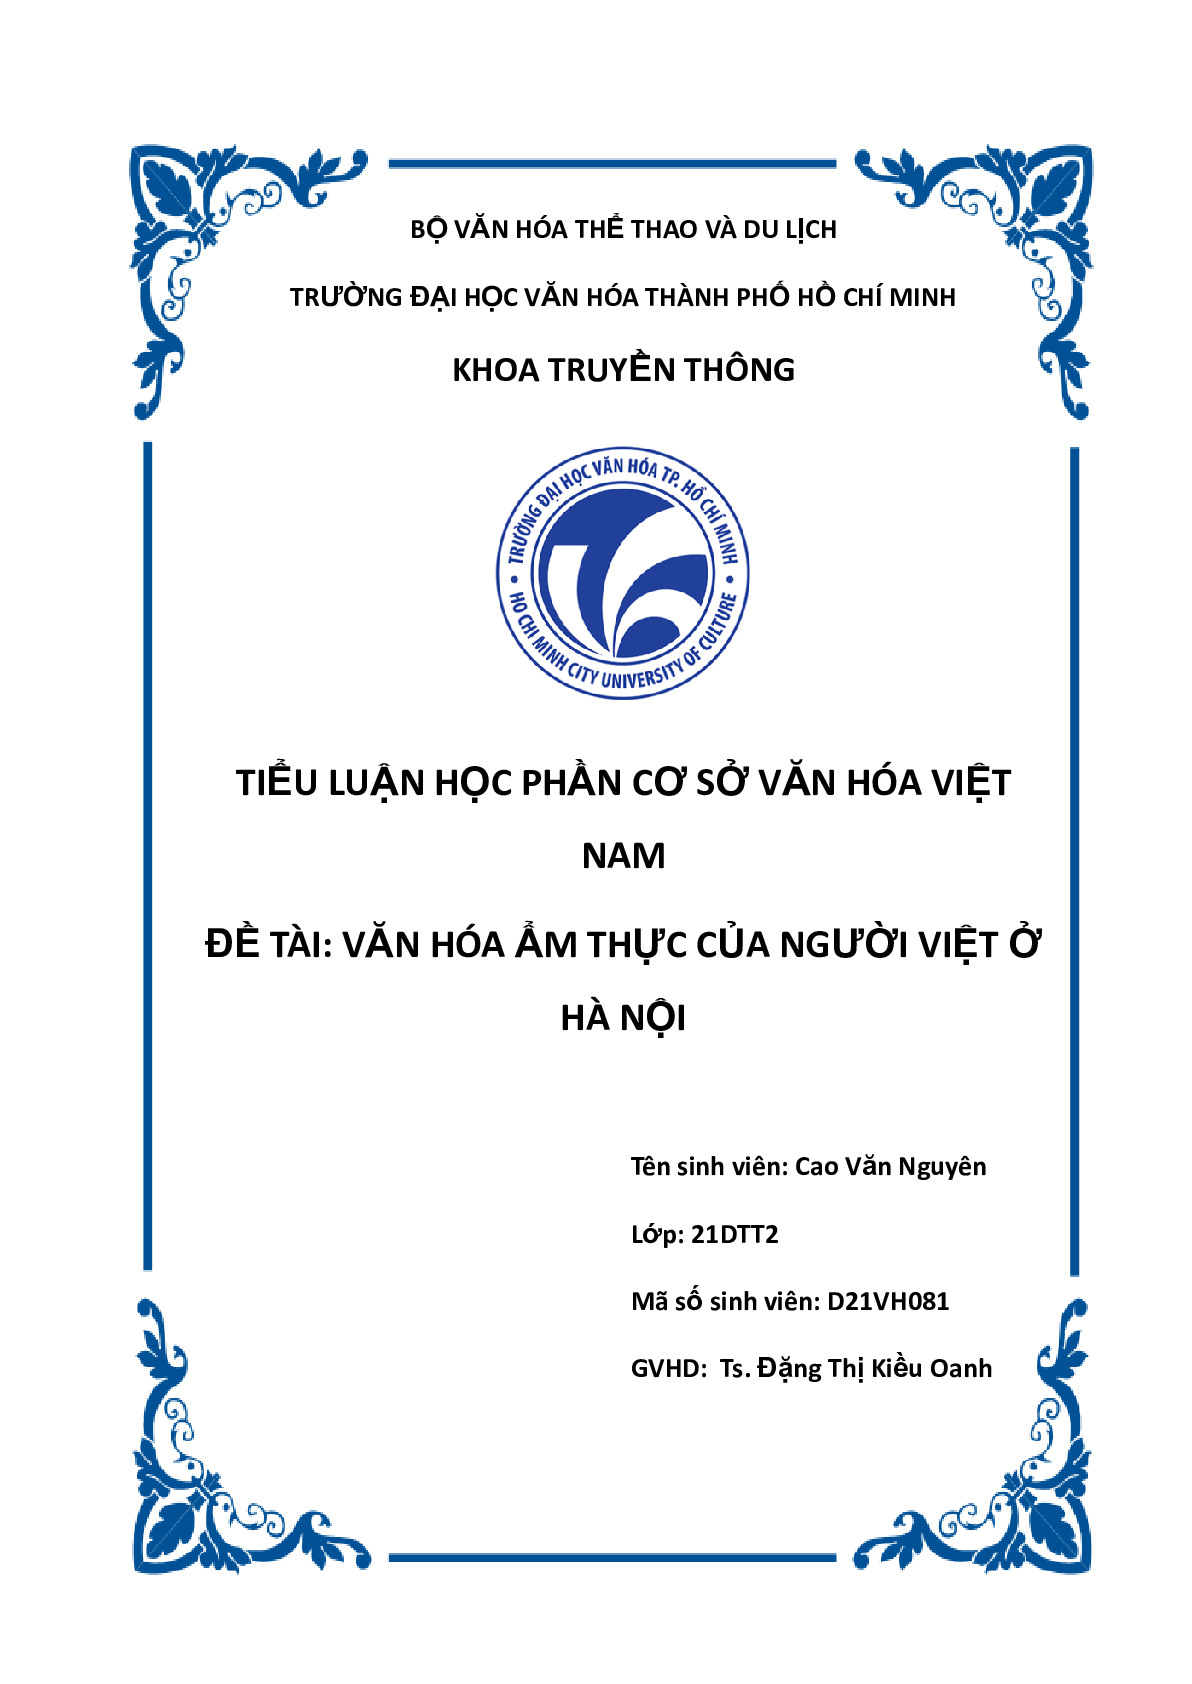 Văn hóa ẩm thực của người Việt ở Hà Nội | Tiểu luận môn Cơ sở Văn hóa Việt Nam | Trường Đại học văn hóa Thành phố Hồ Chí Minh (trang 1)